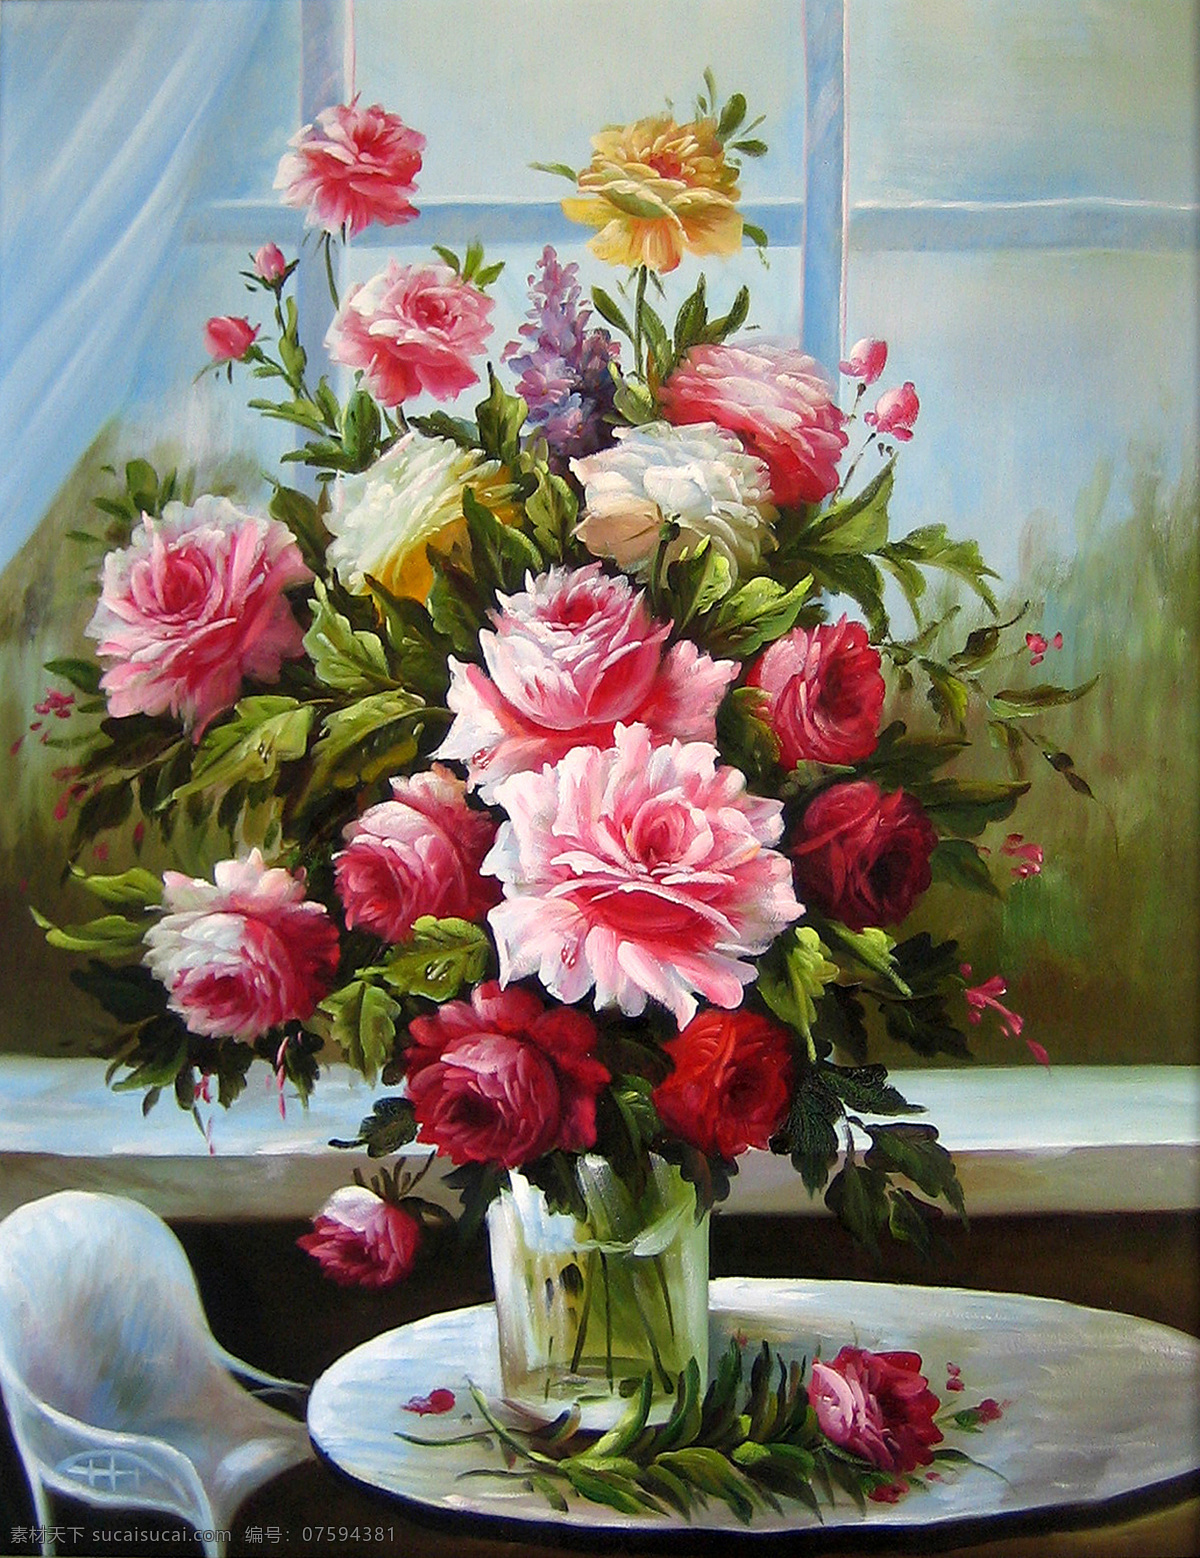 古典花卉 花卉 绘画书法 玫瑰 欧式 文化艺术 油画 设计素材 模板下载 油画花卉 装饰画 家居装饰素材